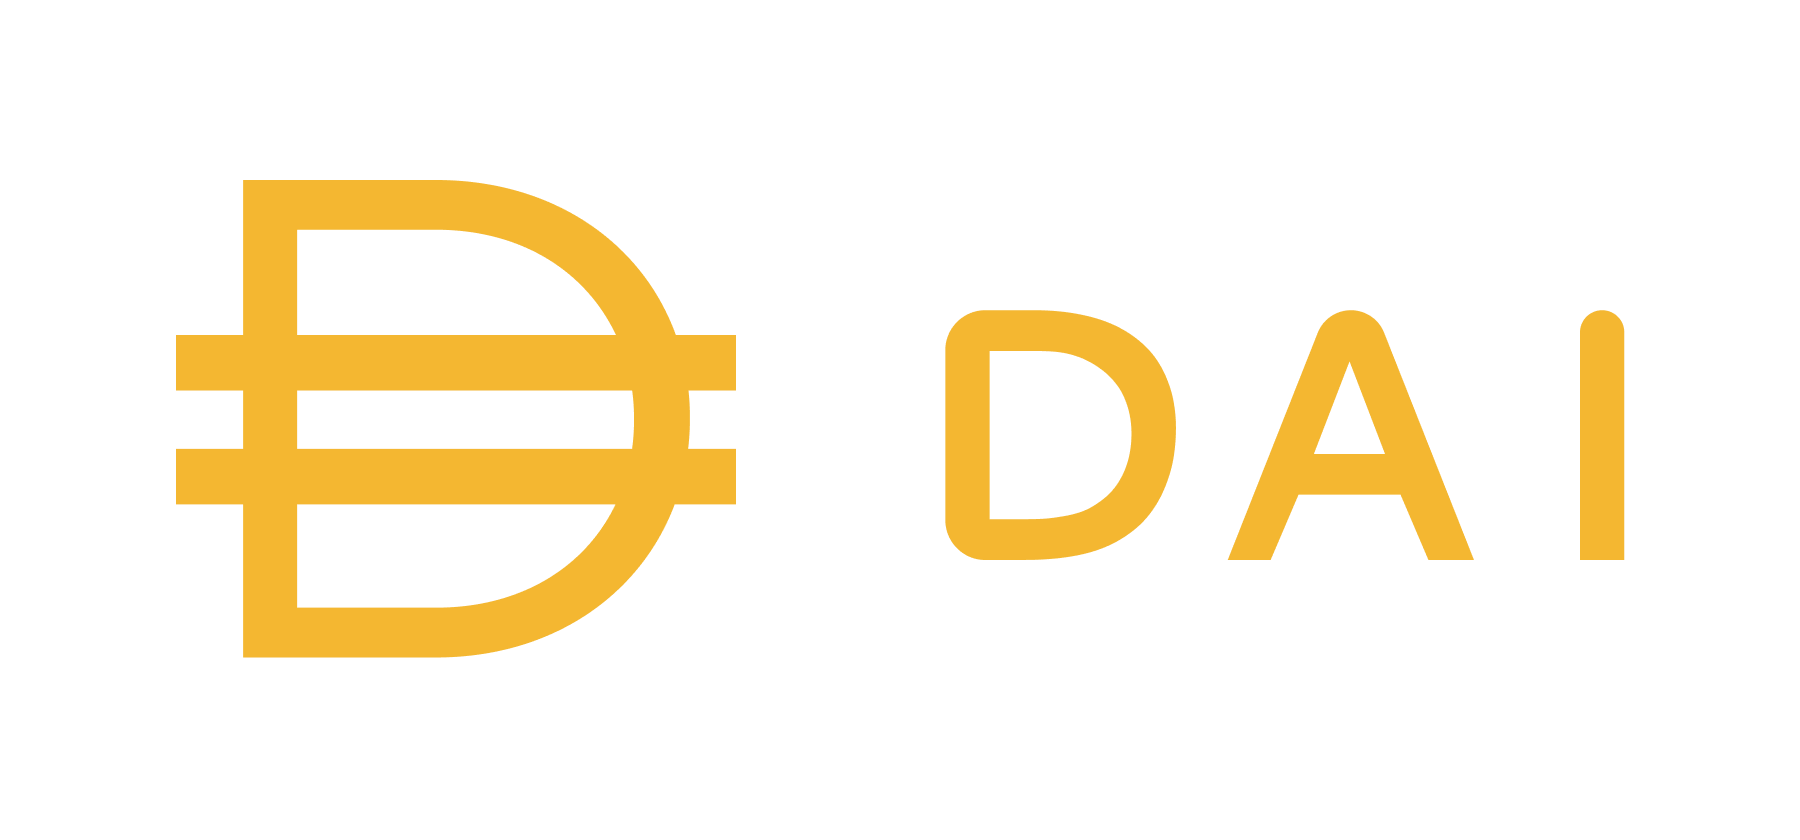 An image of the Dai (DAI) logo.